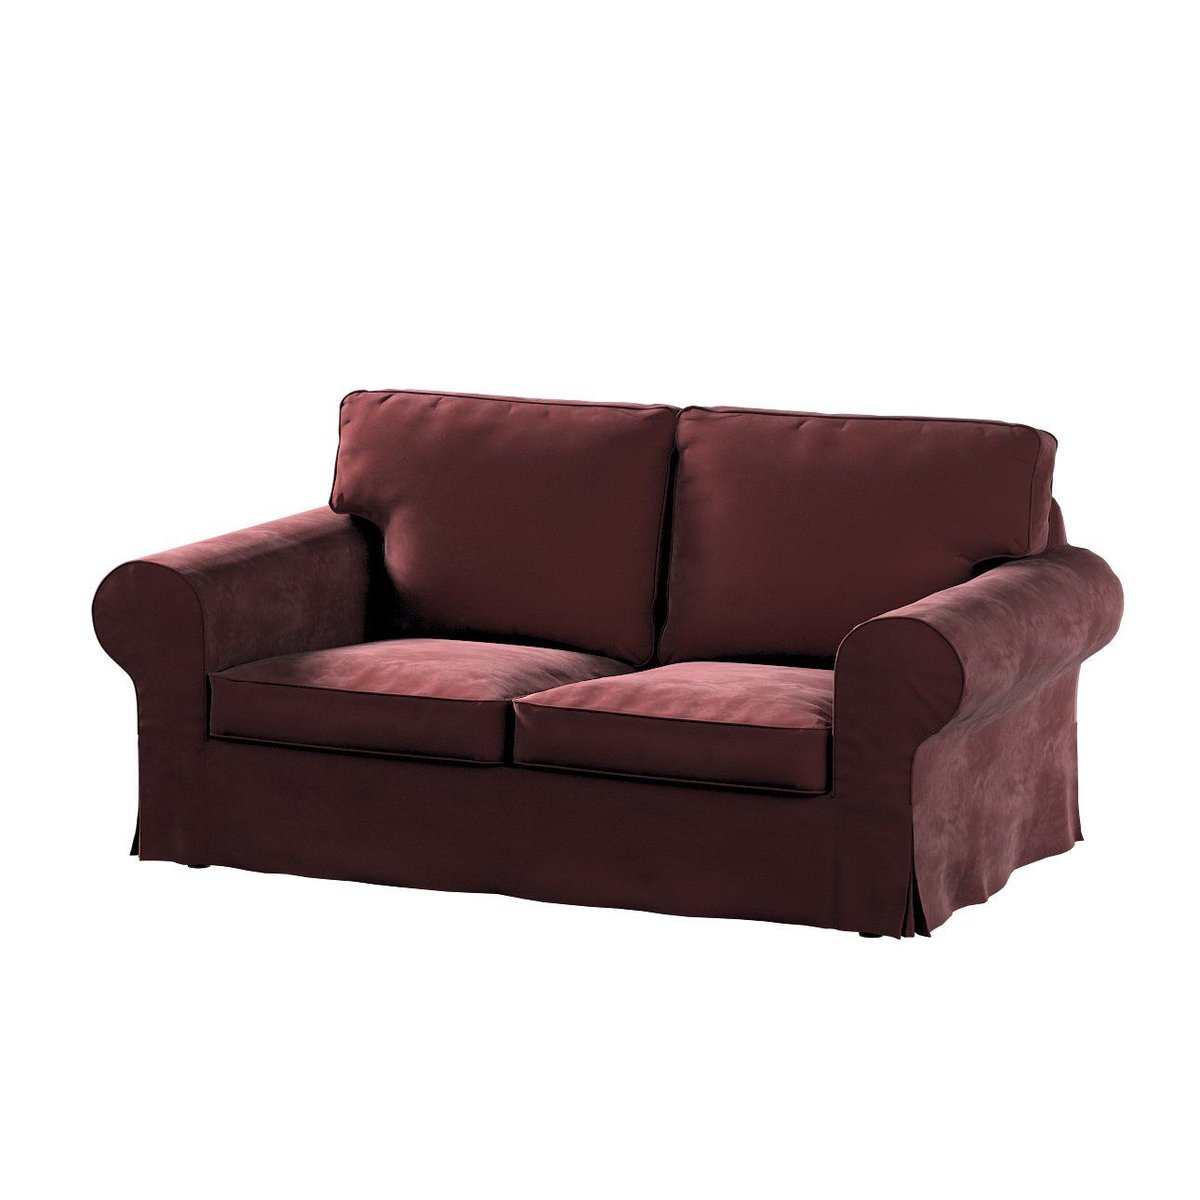 Dekoria Pokrowiec na sofę Ektorp 2-osobową rozkładaną model po 2012 bordowy 200 x 90 x 73 cm Velvet 1016-704-26